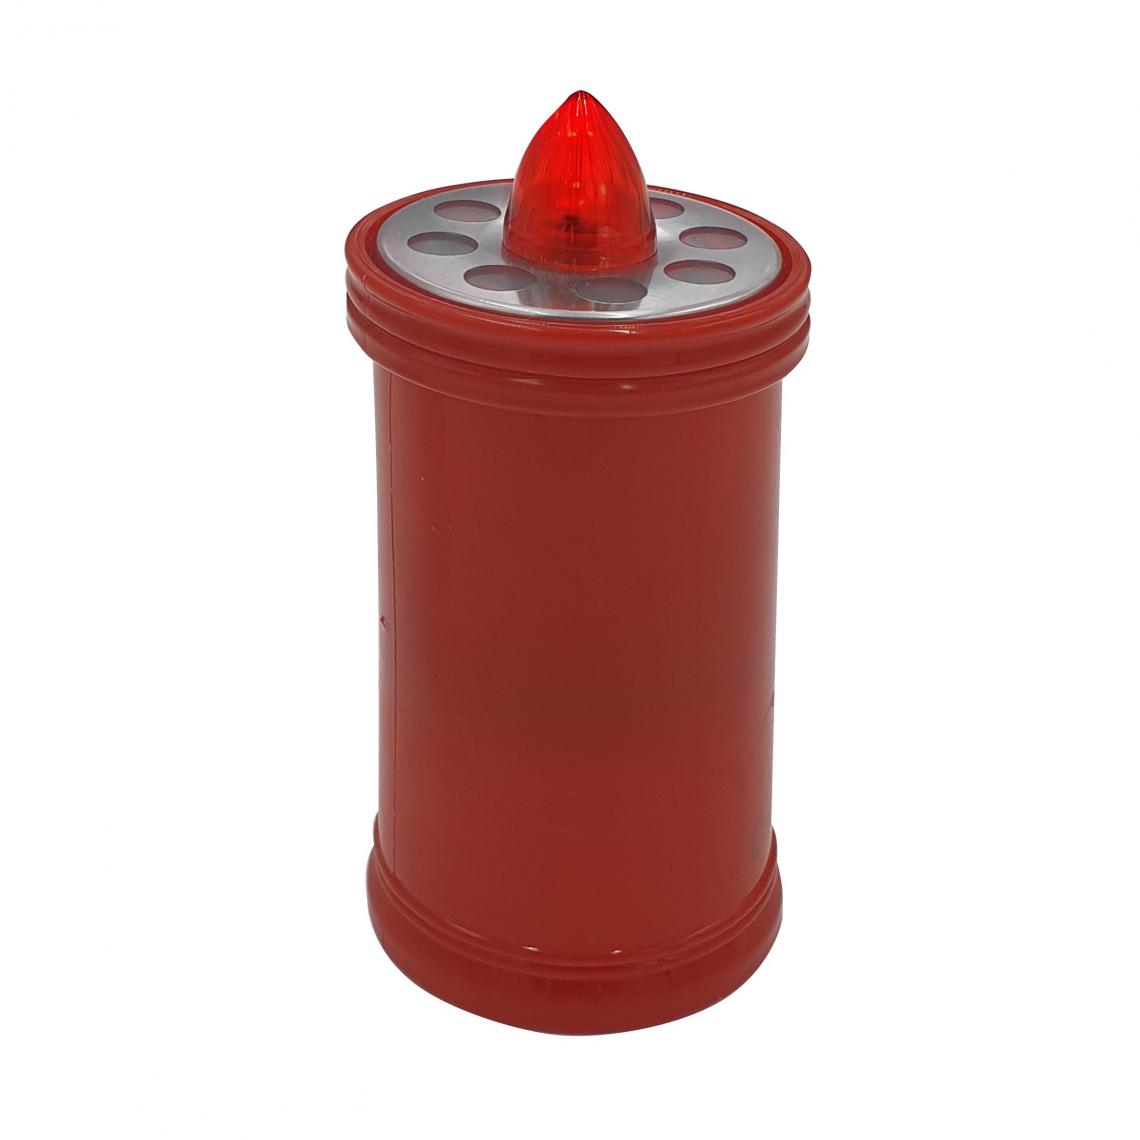 Apple - Bougie votive Led 15,2cm, Durée 90 jours, rouge avec lumière rouge fixe - Lampes portatives sans fil